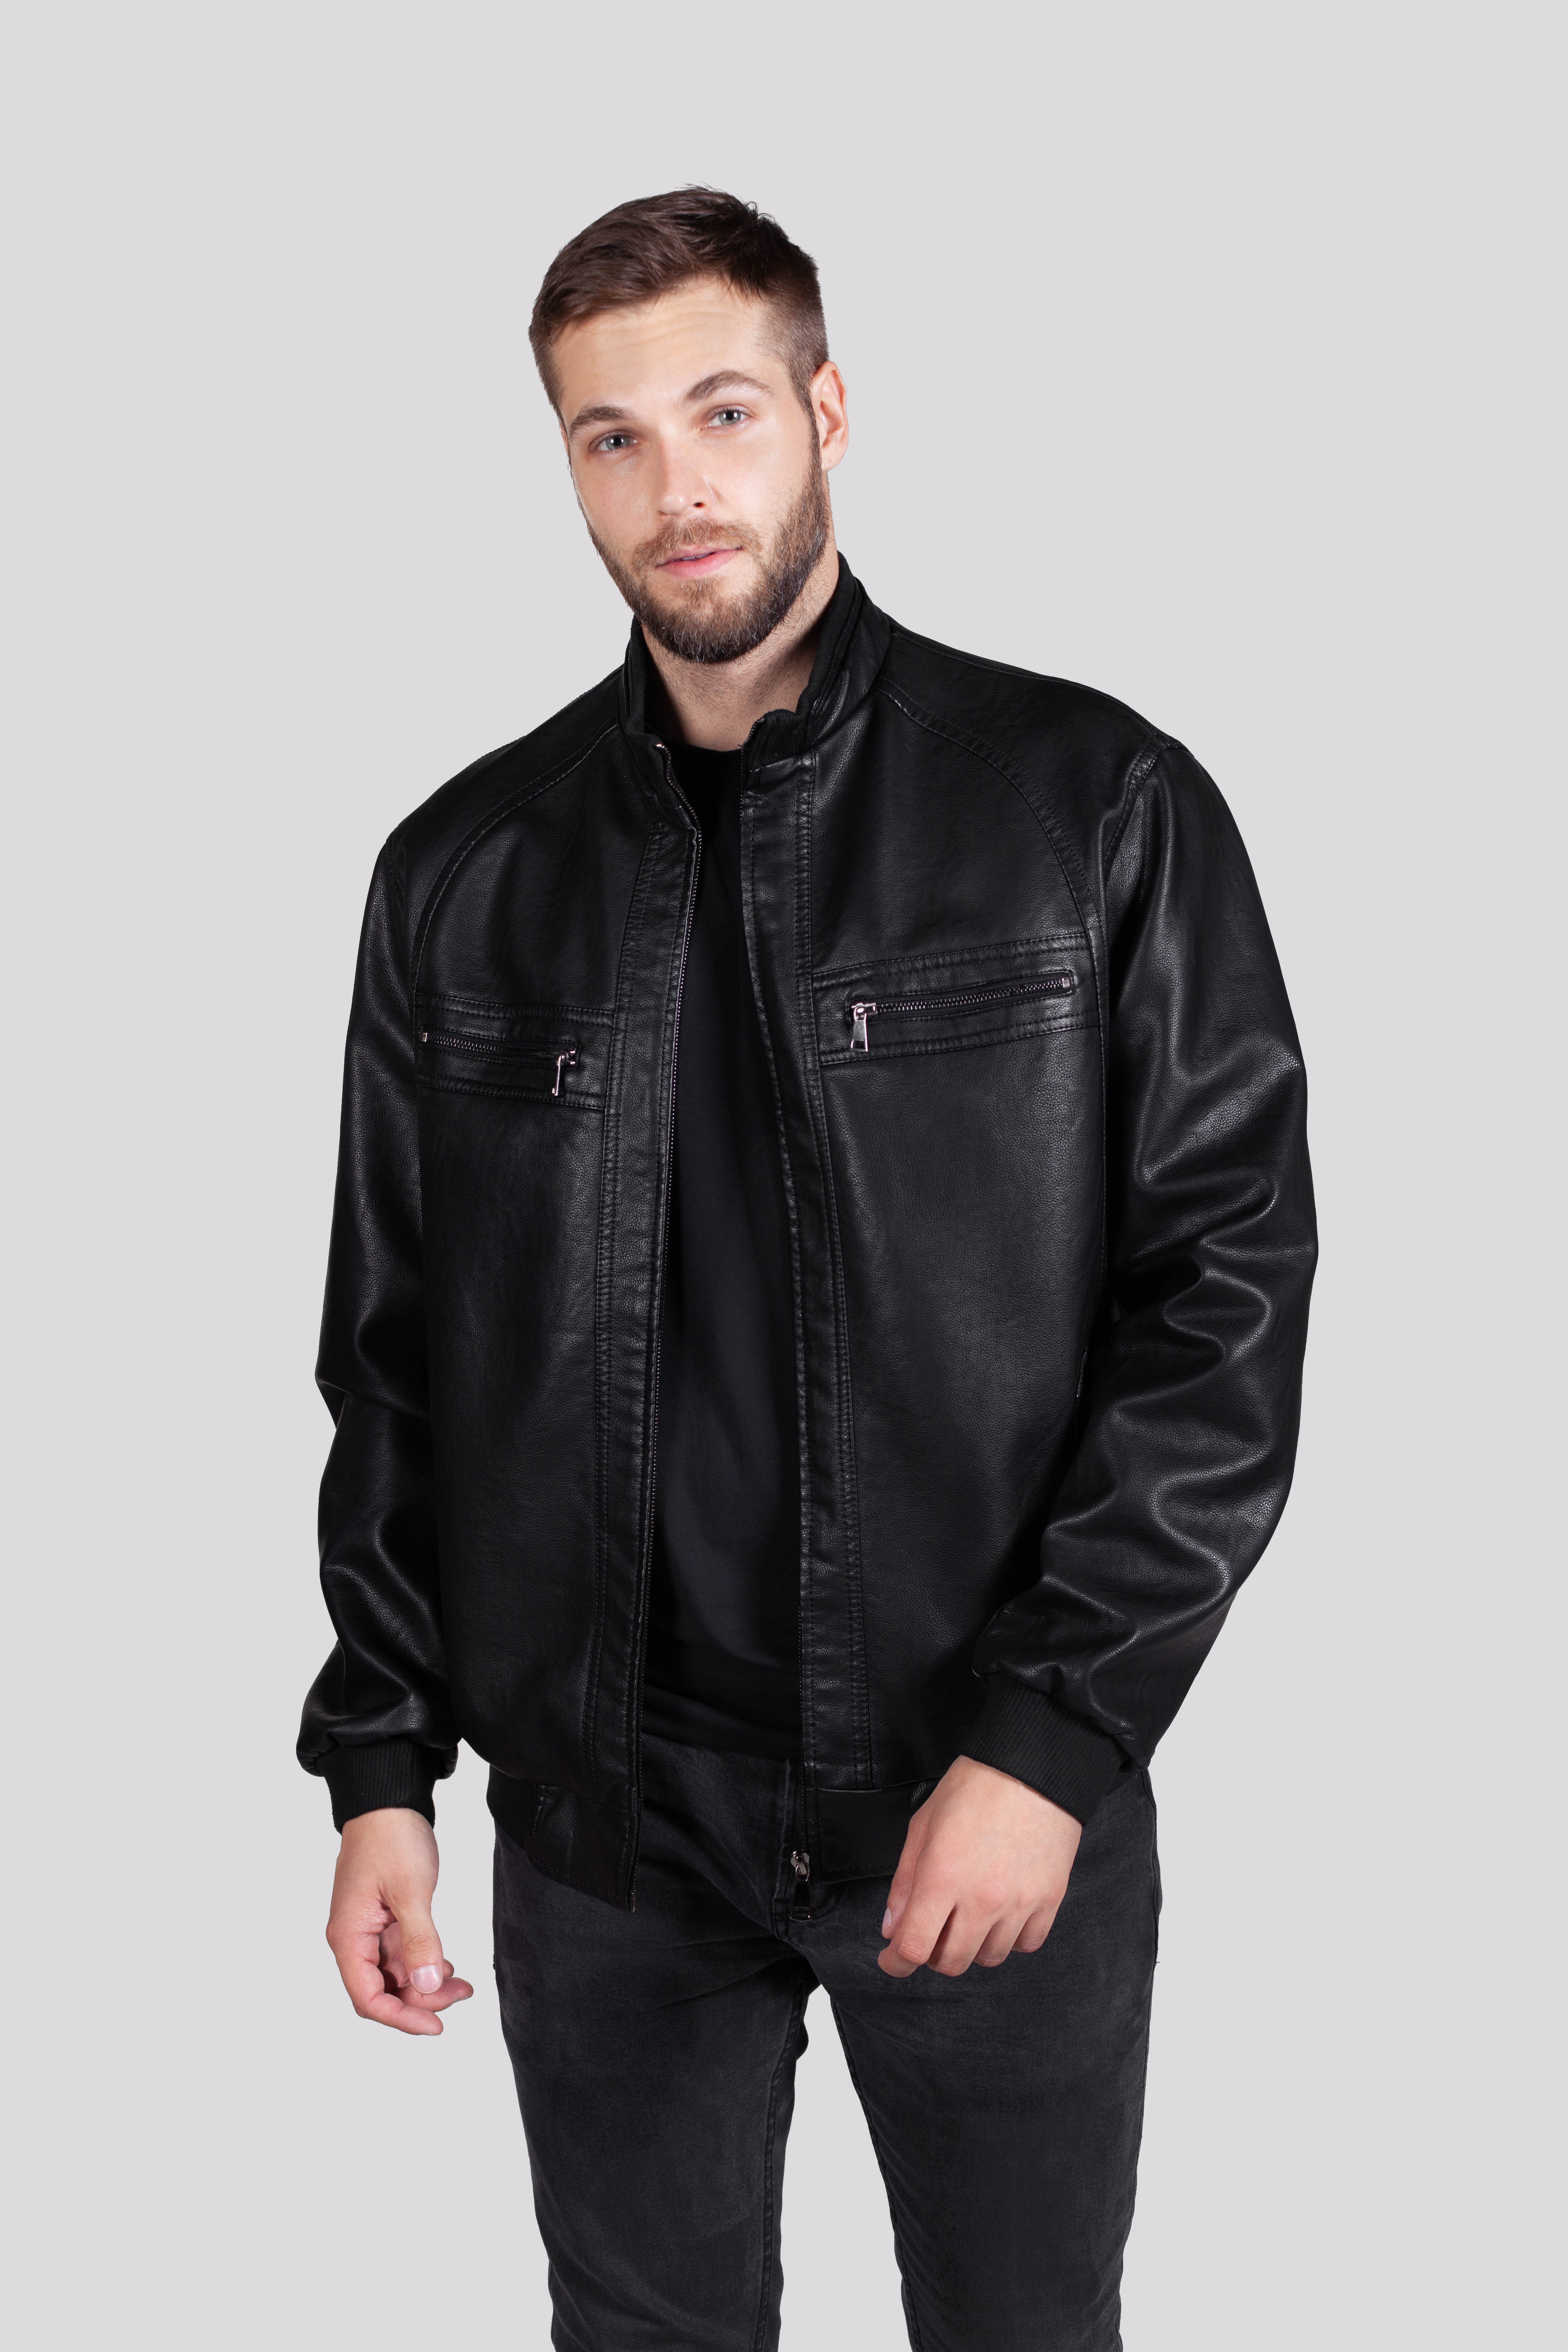 Кожаная куртка мужская RATSKA 809 черная 58 RU